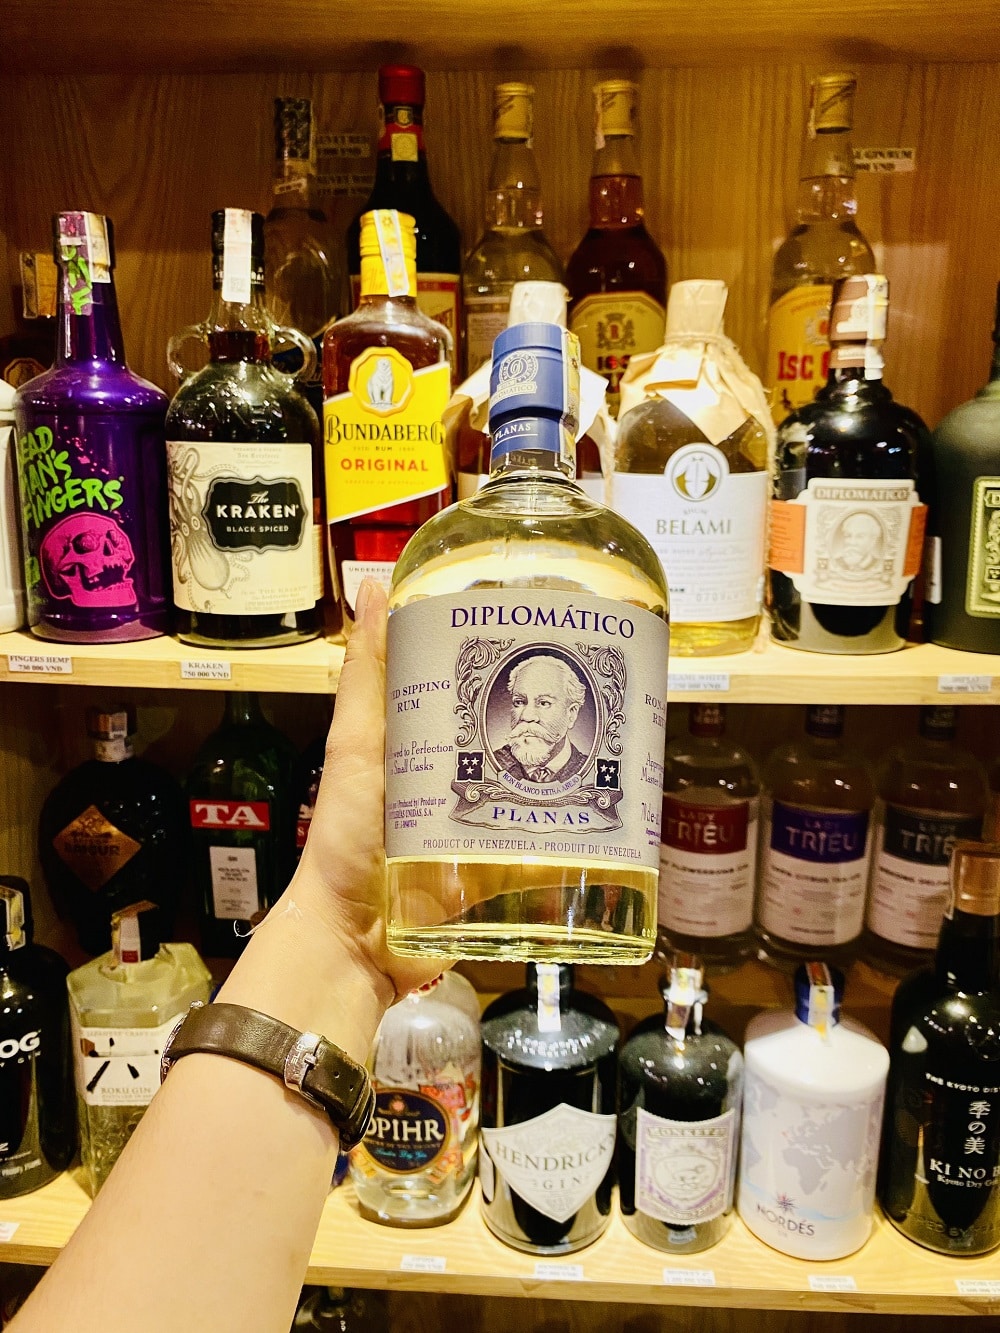 Mua rượu Diplomatico Planas ở Đà Nẵng tại Hải Gia Cát